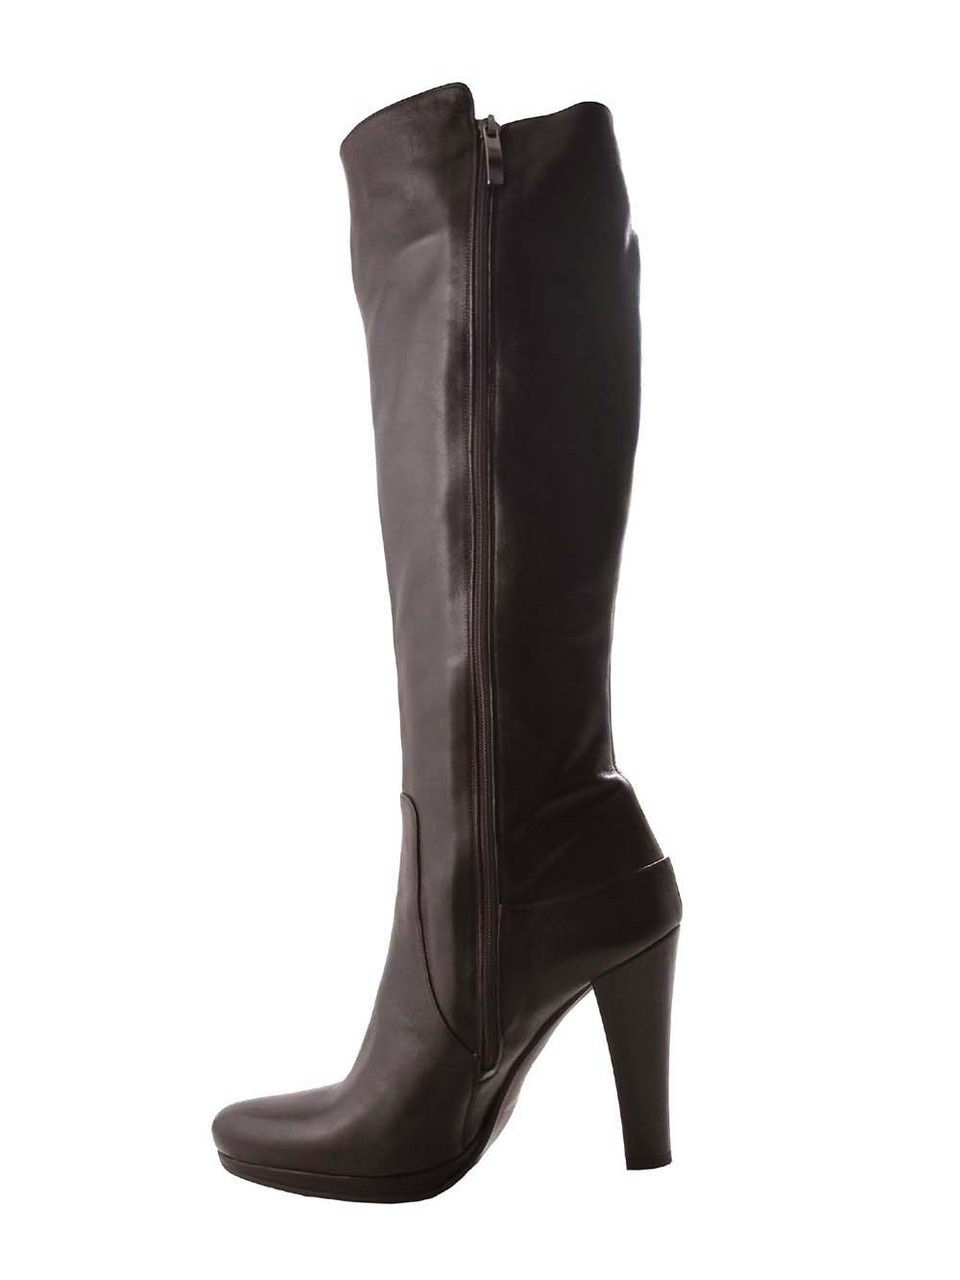 Designer Knee High Boots for Women